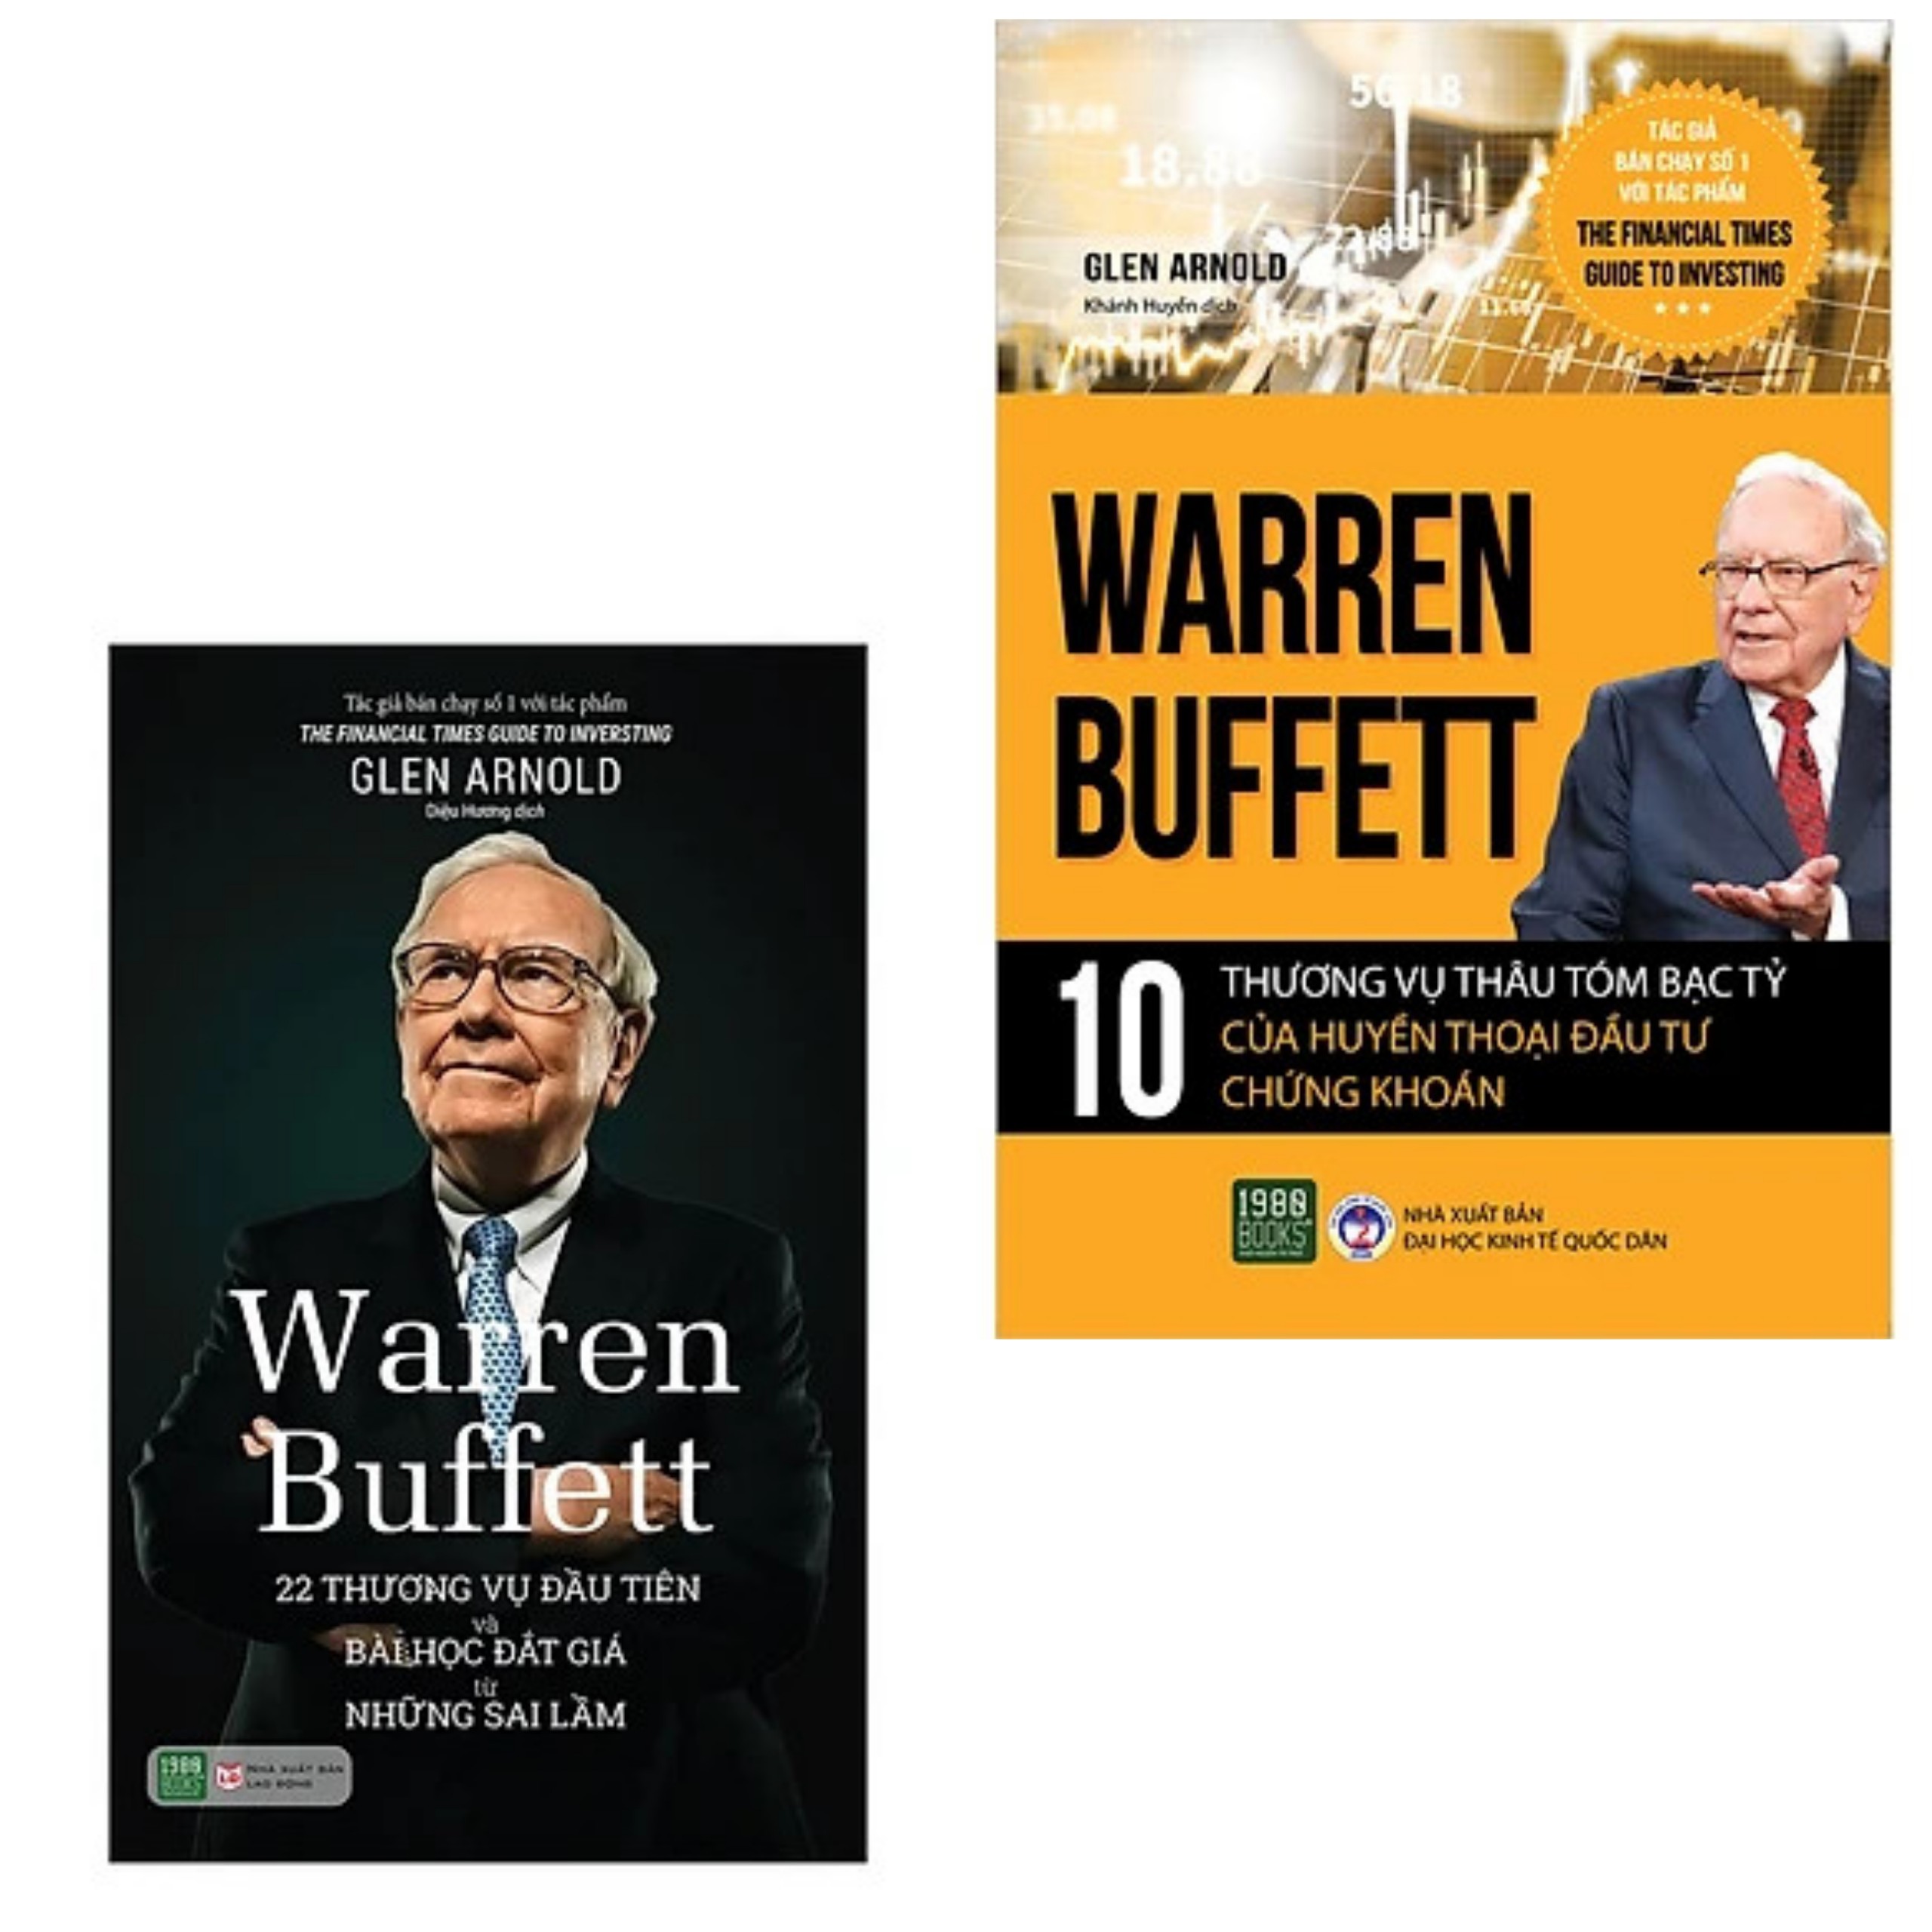 Combo 2 cuốn: Warren Buffett: Warren Buffett: 22 Thương Vụ Đầu Tiên Và Bài Học Đắt Giá Từ Những Sai Lầm + Warren Buffett - 10 Thương Vụ Thâu Tóm Bạc Tỷ Của Huyền Thoại Đầu Tư Chứng Khoán( Bộ sách đầu tư/kinh doanh thành công) 